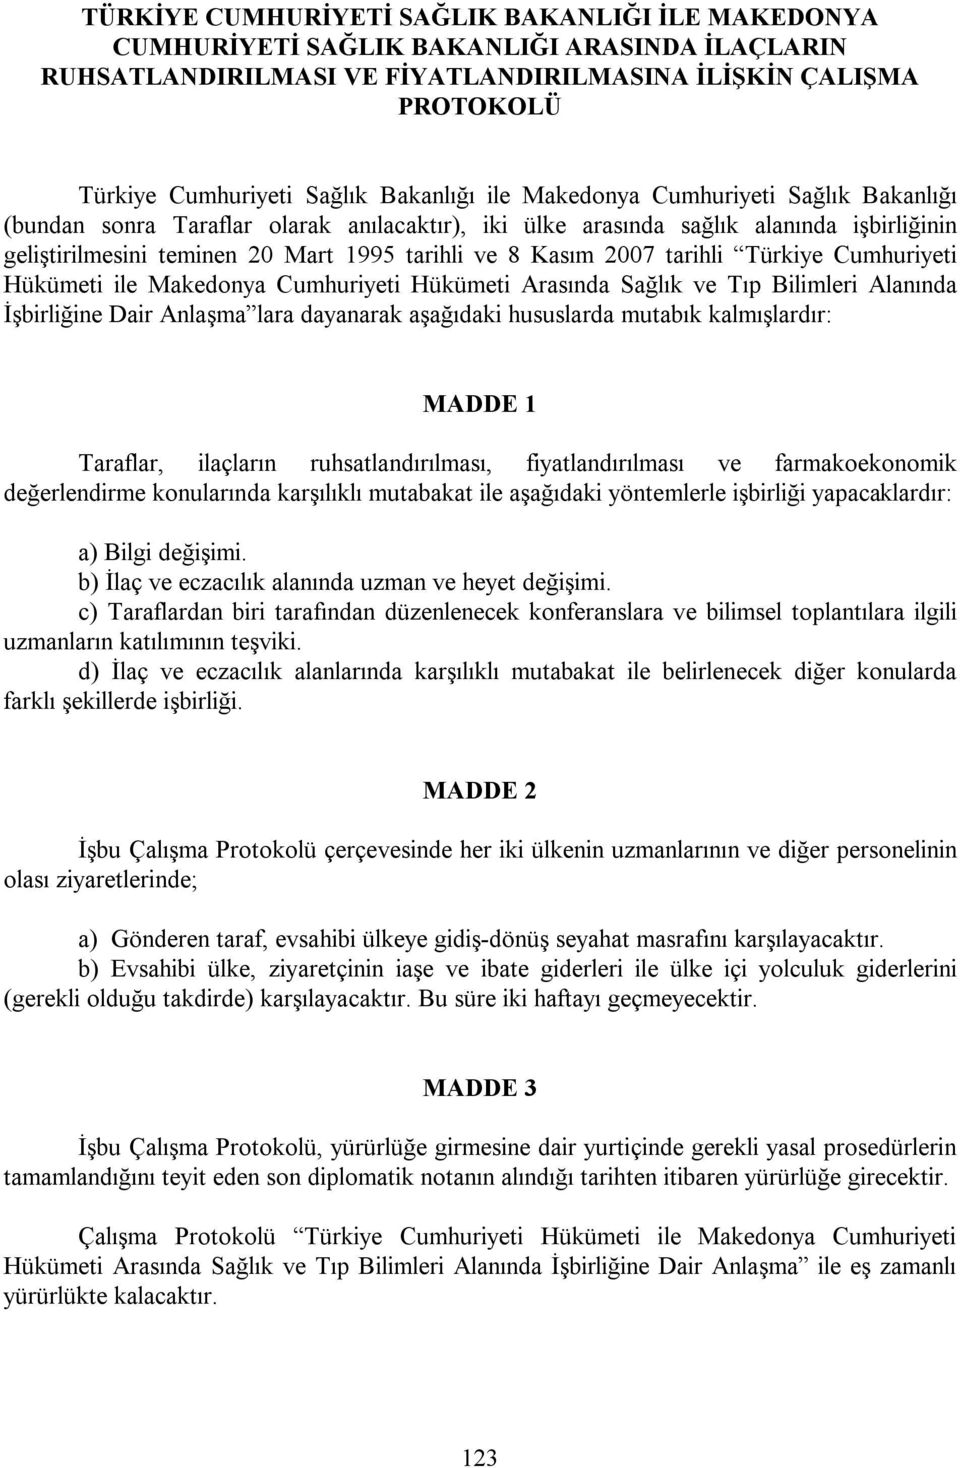 Kasım 2007 tarihli Türkiye Cumhuriyeti Hükümeti ile Makedonya Cumhuriyeti Hükümeti Arasında Sağlık ve Tıp Bilimleri Alanında İşbirliğine Dair Anlaşma lara dayanarak aşağıdaki hususlarda mutabık